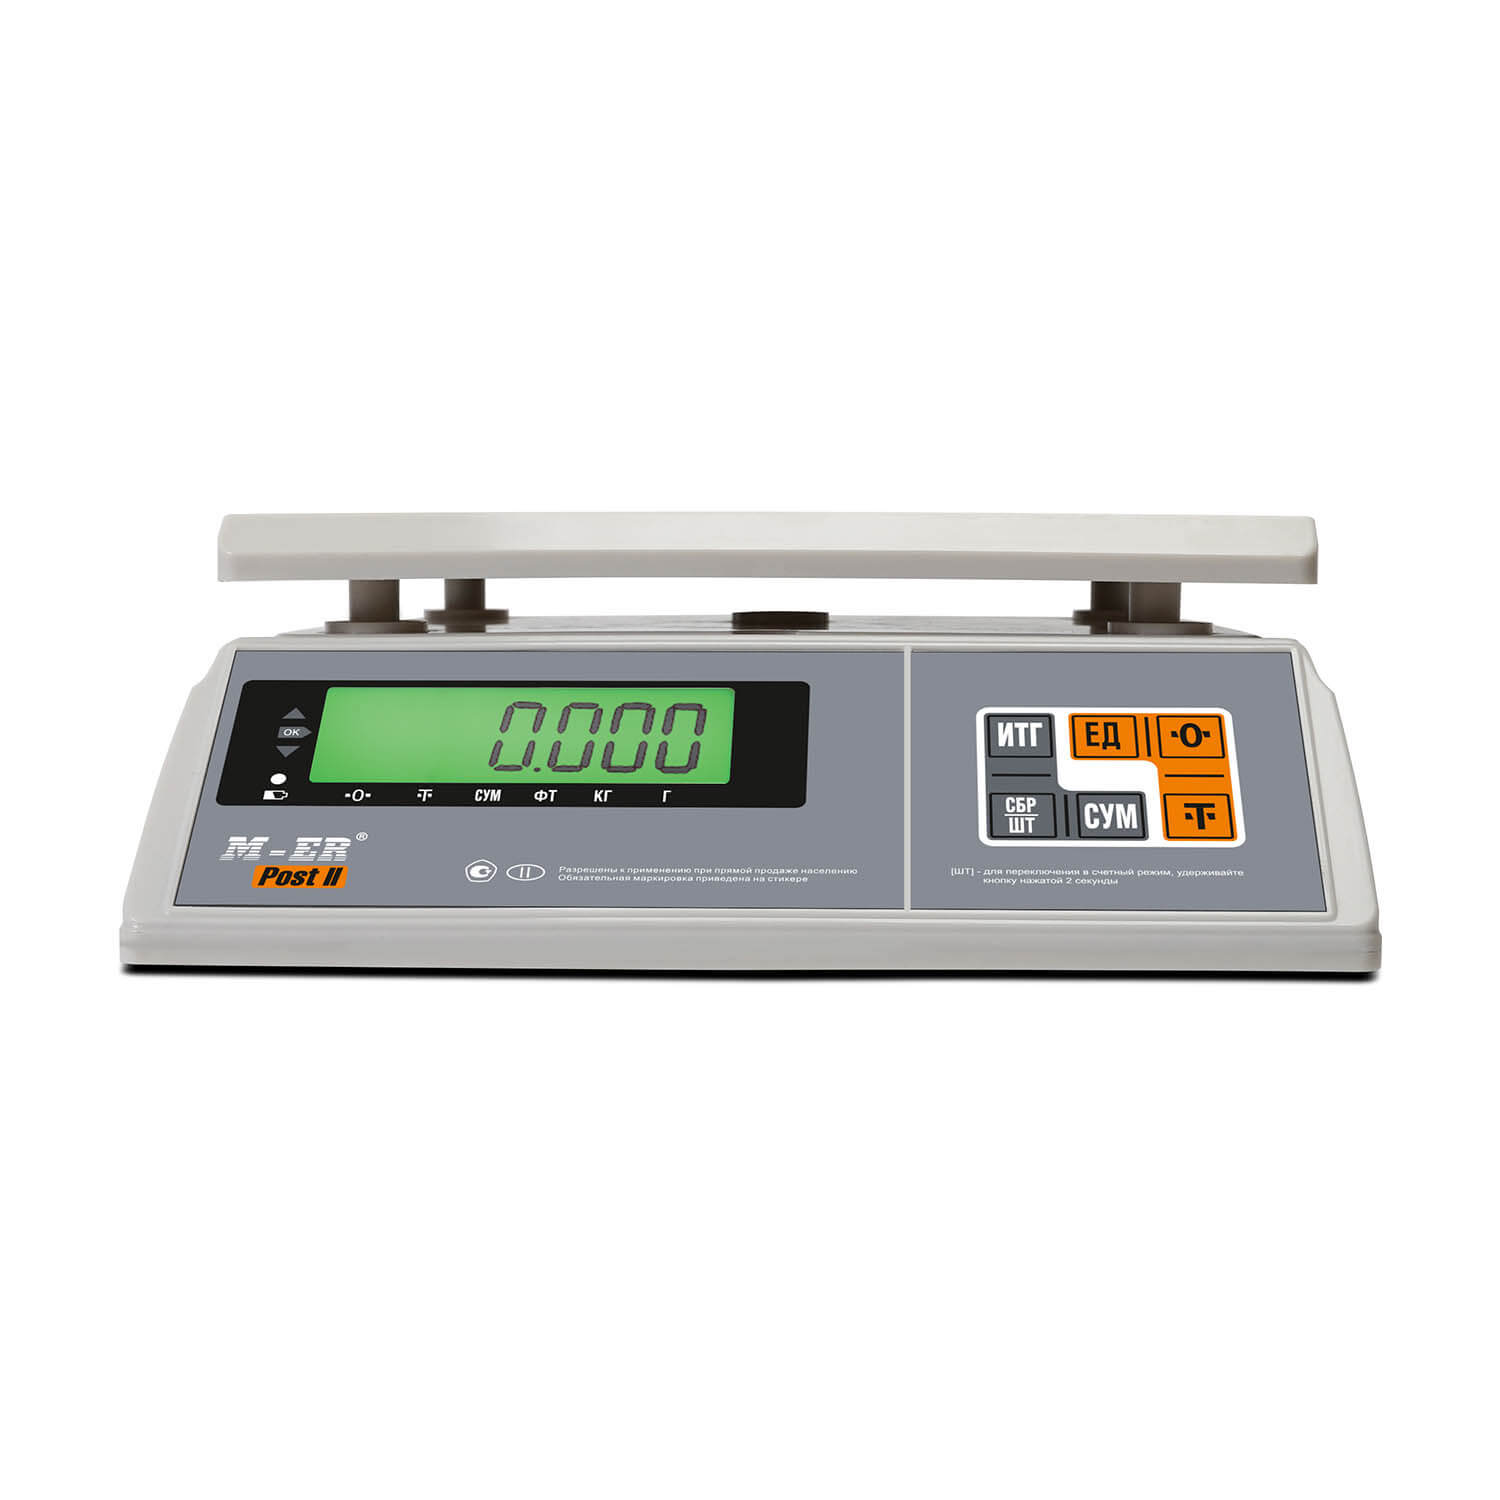 Порционные весы M-ER 326 AFU-6.01 "Post II" LCD MERTECH 3059 Весы #2